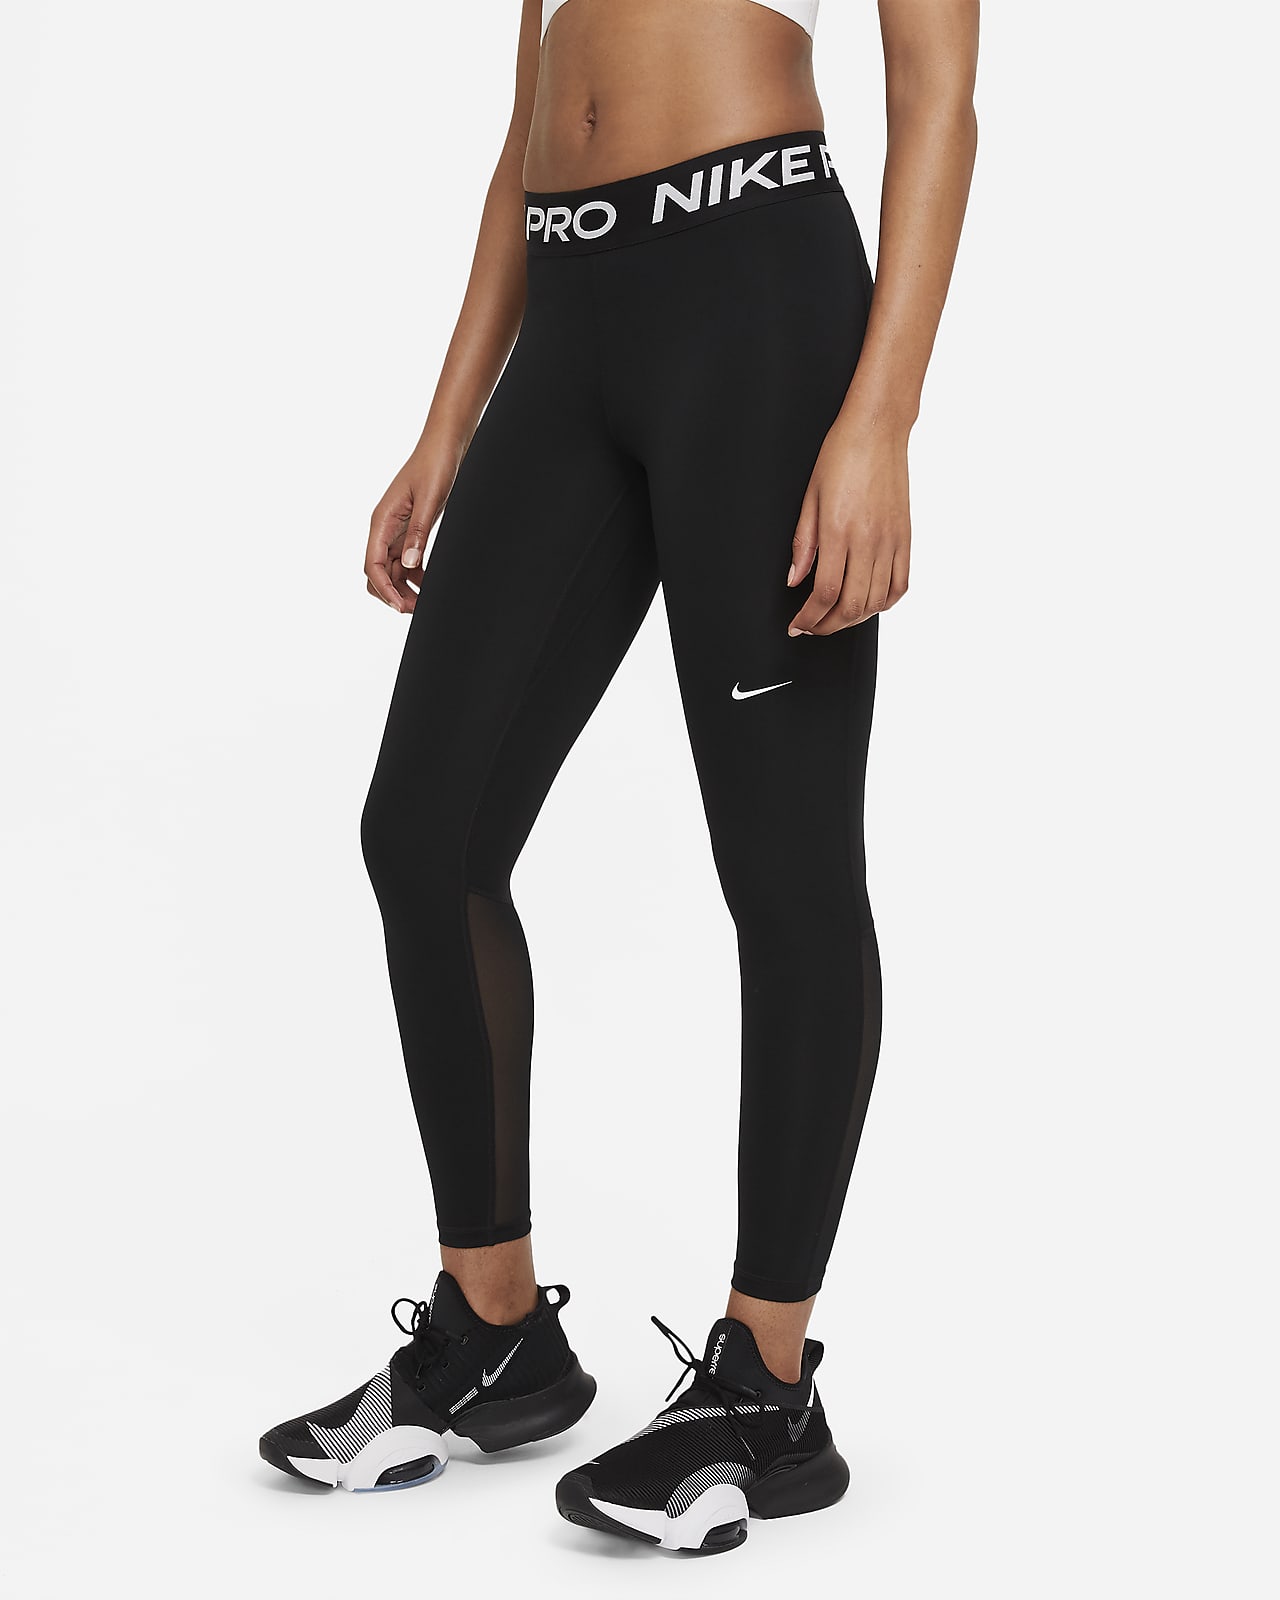 nike pro leggings for women